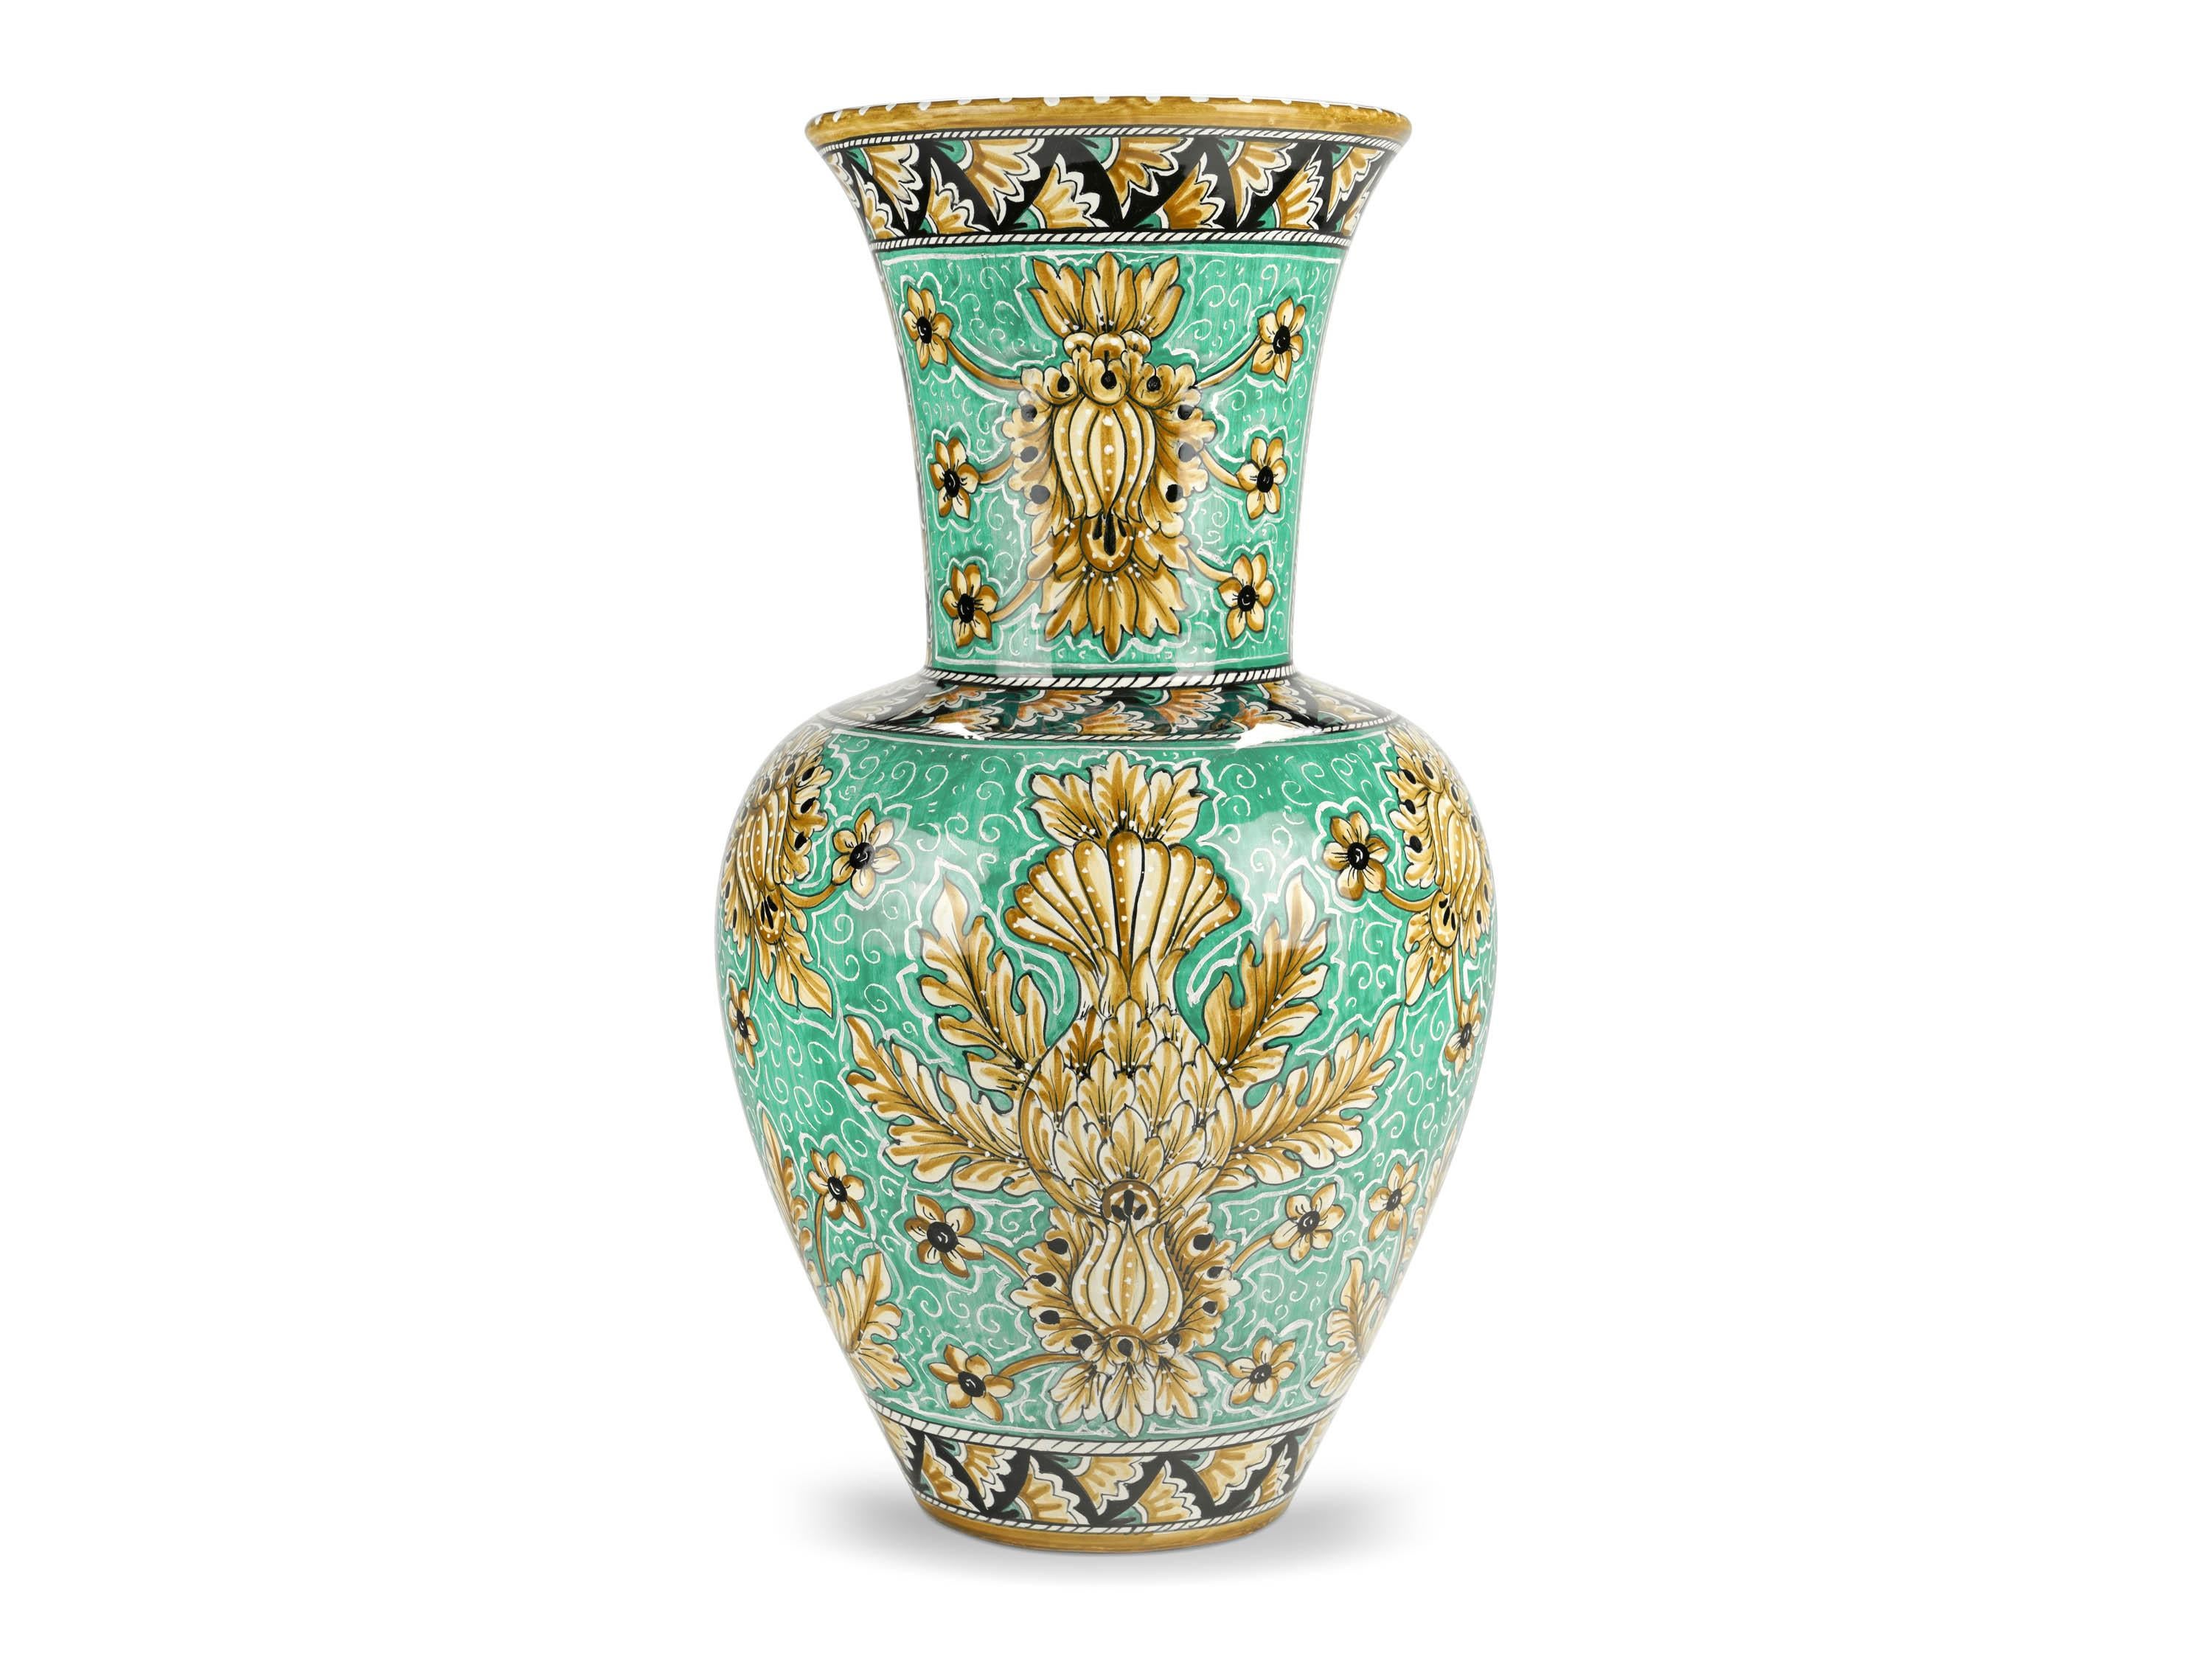 Große majolische Vase in grüner Aquamarinfarbe, polychrom glasiert, gekennzeichnet durch die elegante Präsenz von naturalistischen ornamentalen Motiven, die ihre Formen schön hervorheben. Ihre starke ästhetische Wirkung wird durch den schlanken Hals